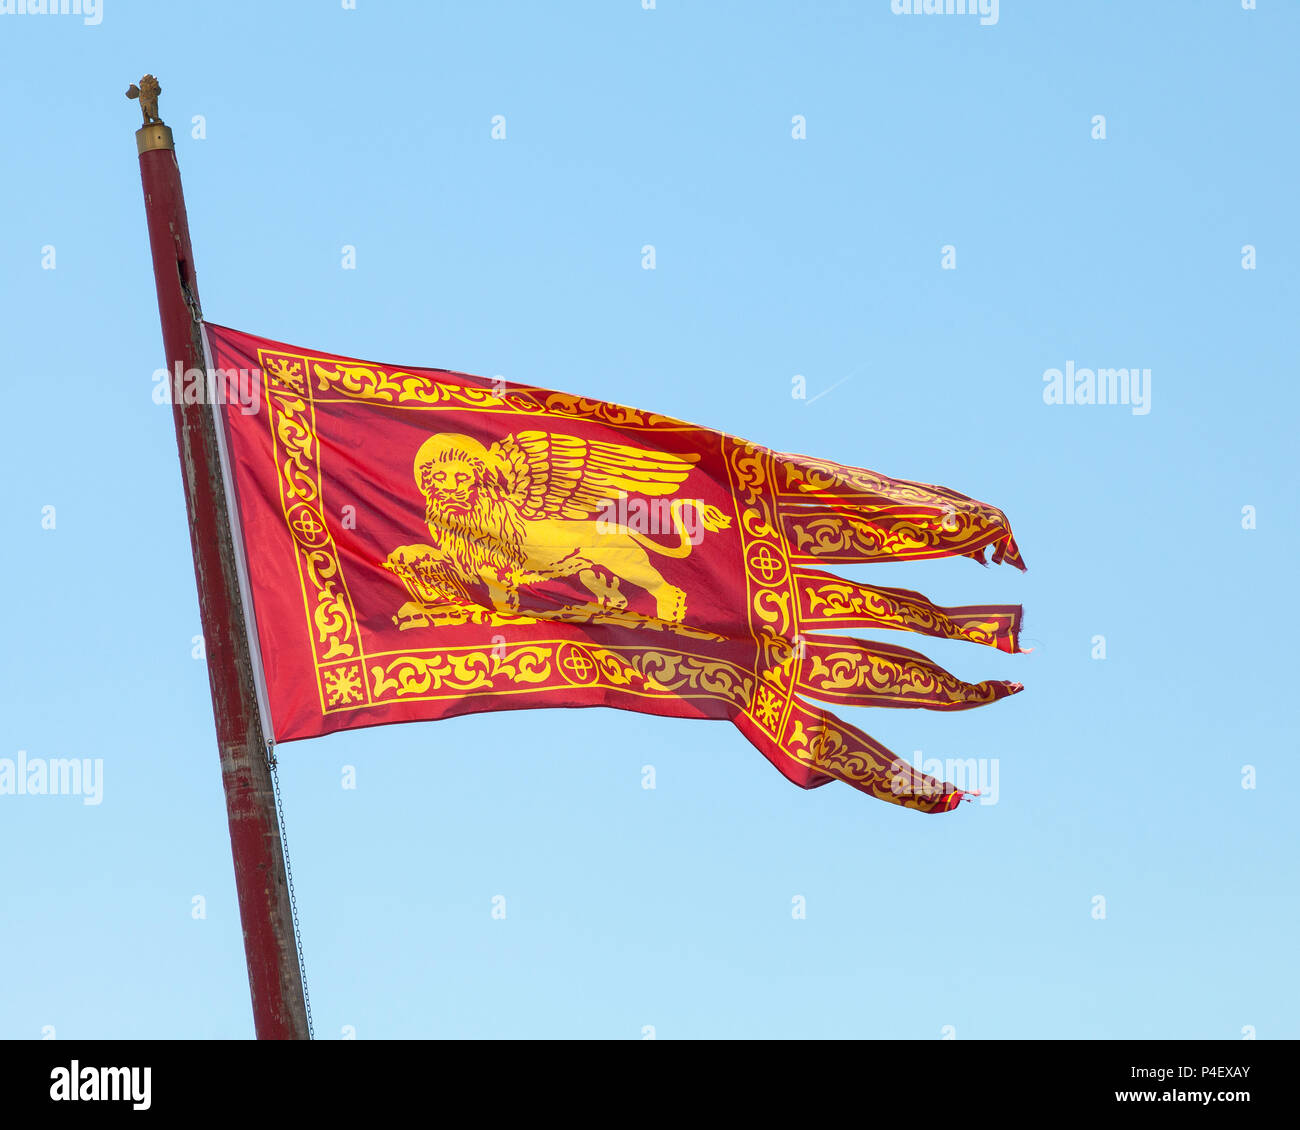 Venetian flag with Lion of St Mark  flying against a sunny blue sky, Venice, Veneto, italy Stock Photo